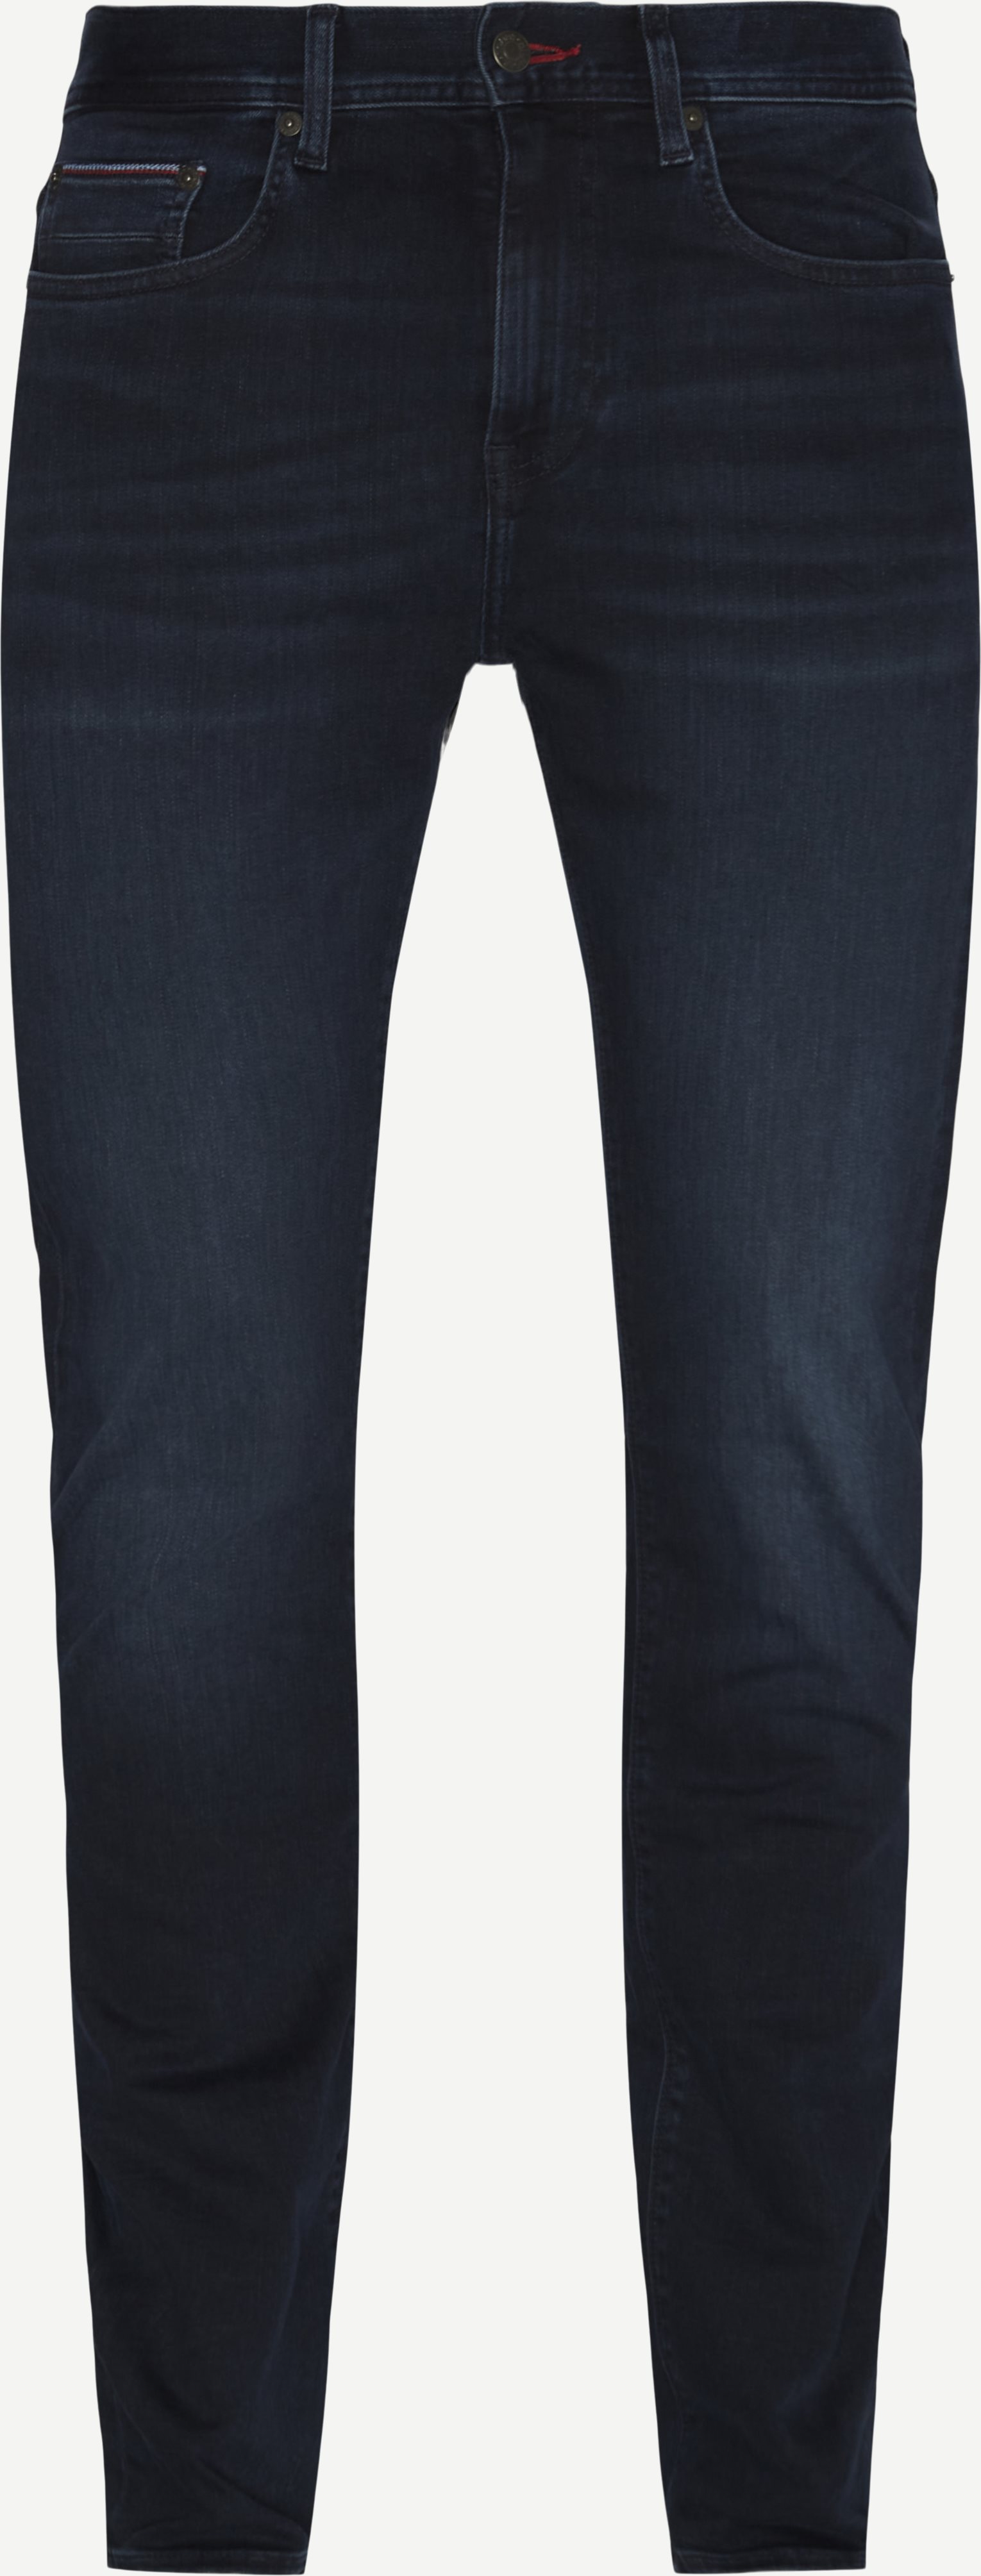 Tommy Hilfiger Jeans 15593 SLIM BLEECKER Denim